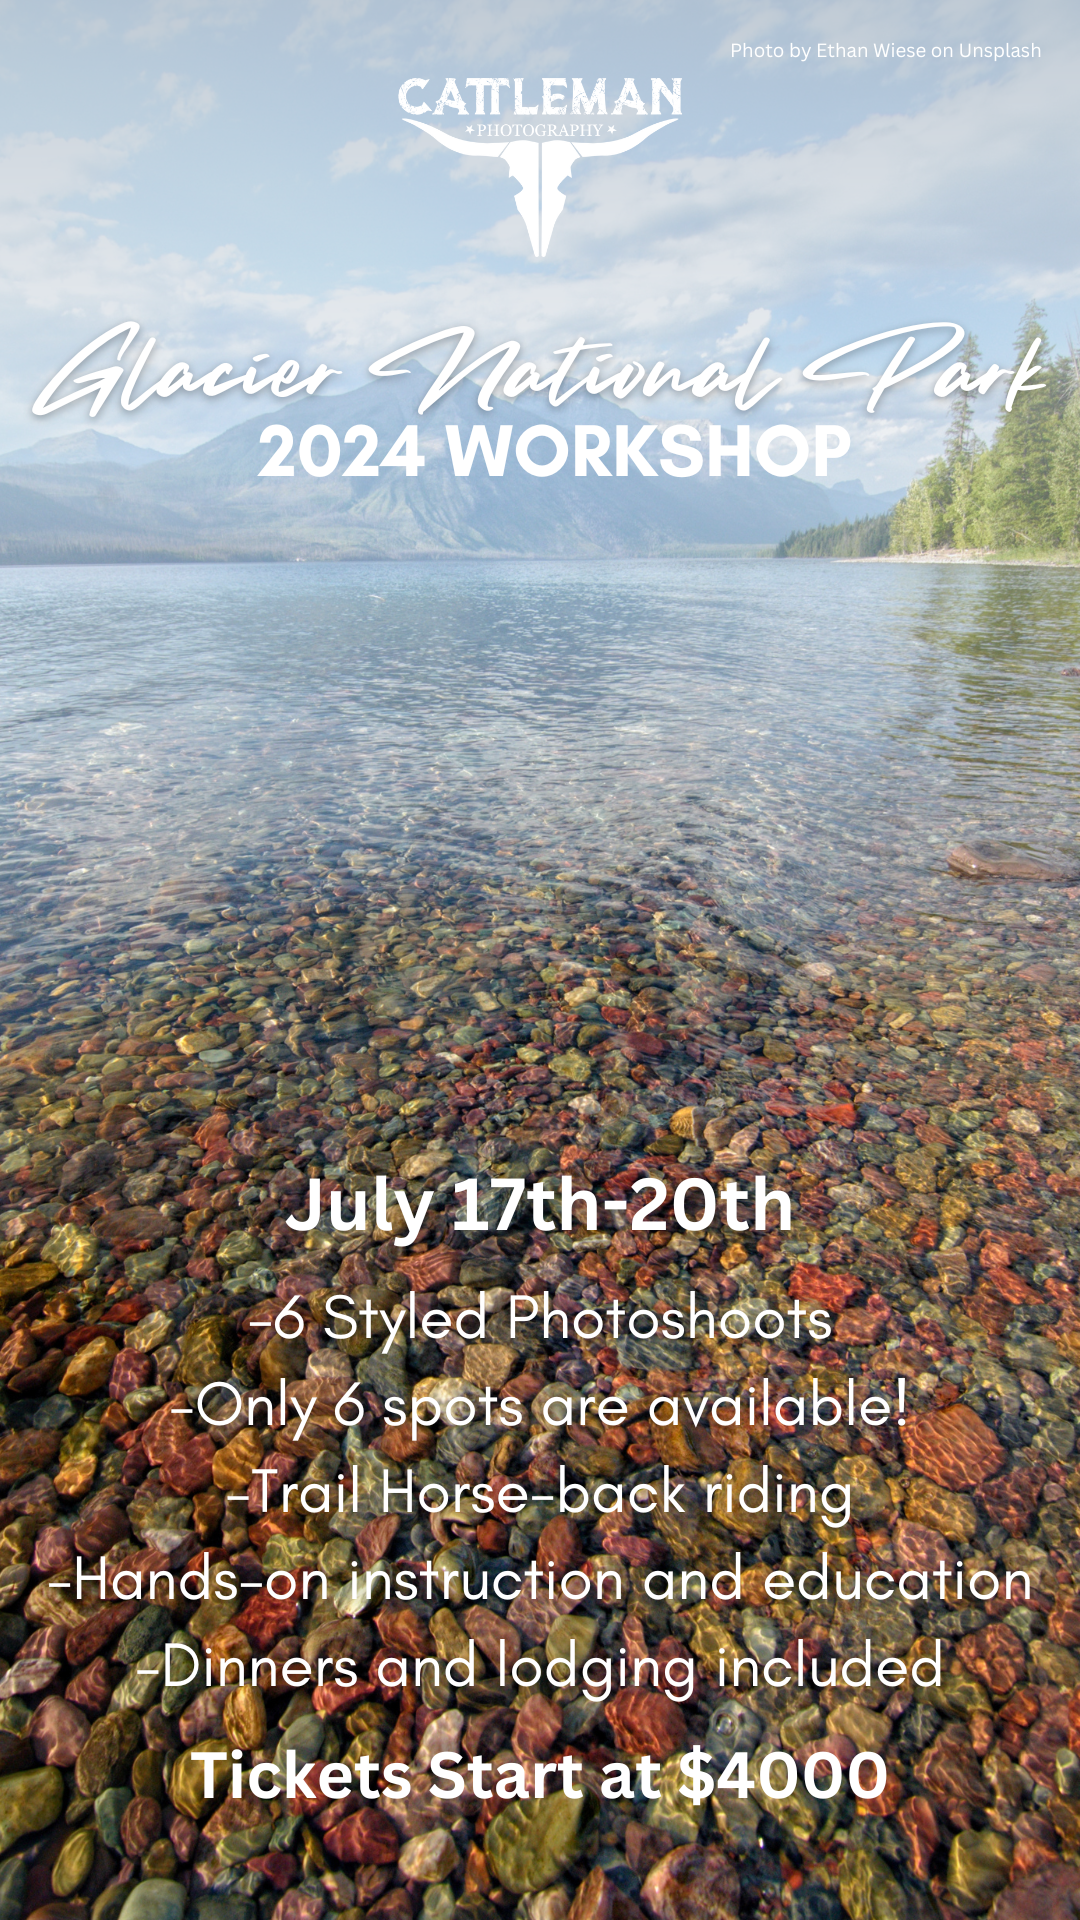 Glacier National Park Workshop 2024 Ticket